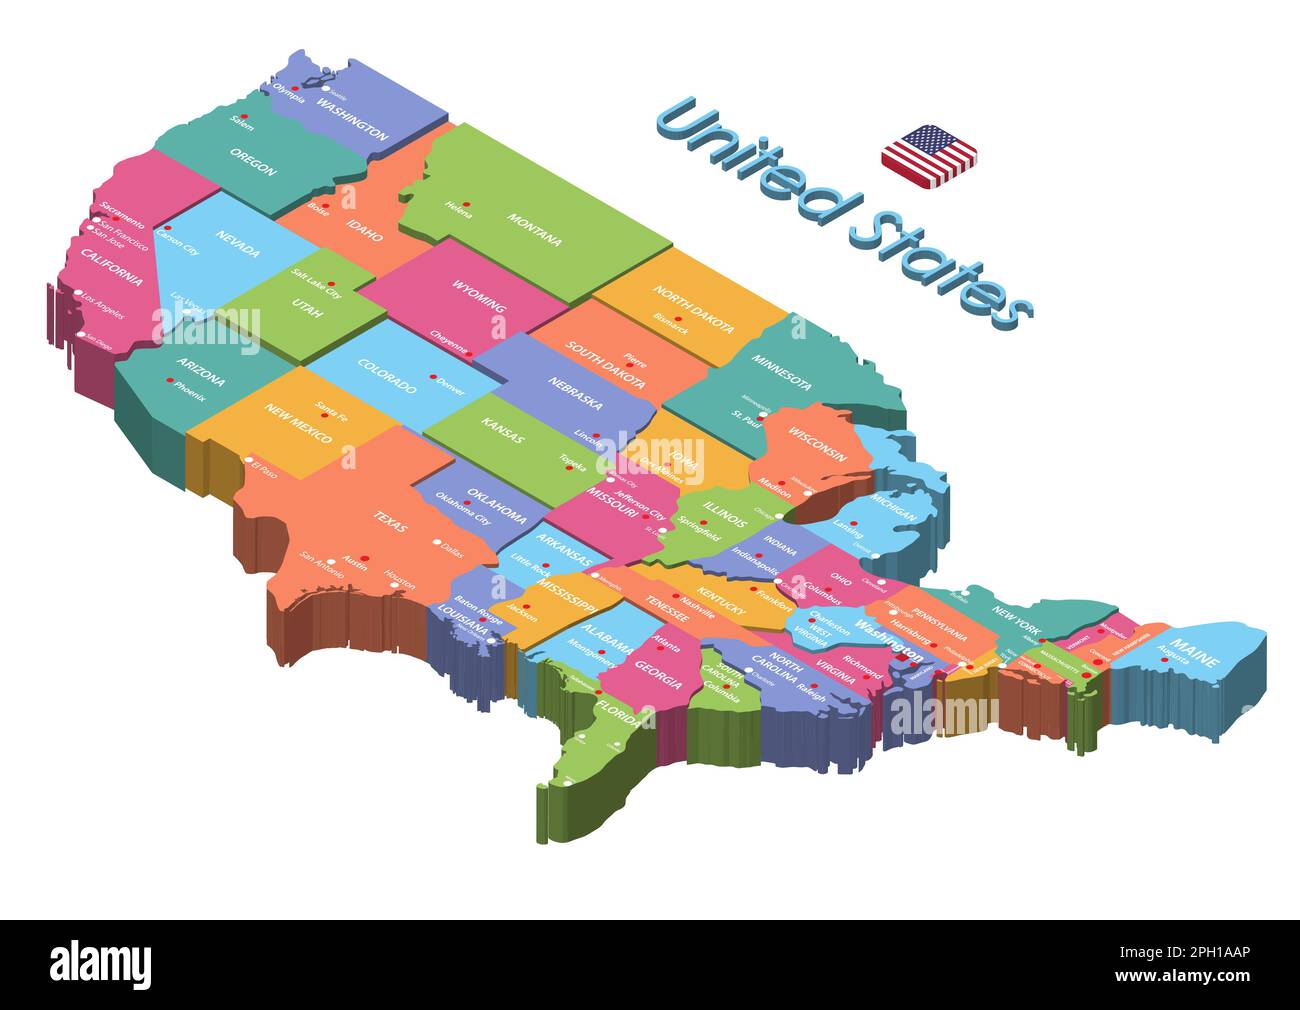 Die isometrische, mehrstufige Karte der Vereinigten Staaten zeigt die Hauptstädte und größten Städte der Bundesstaaten Stock Vektor